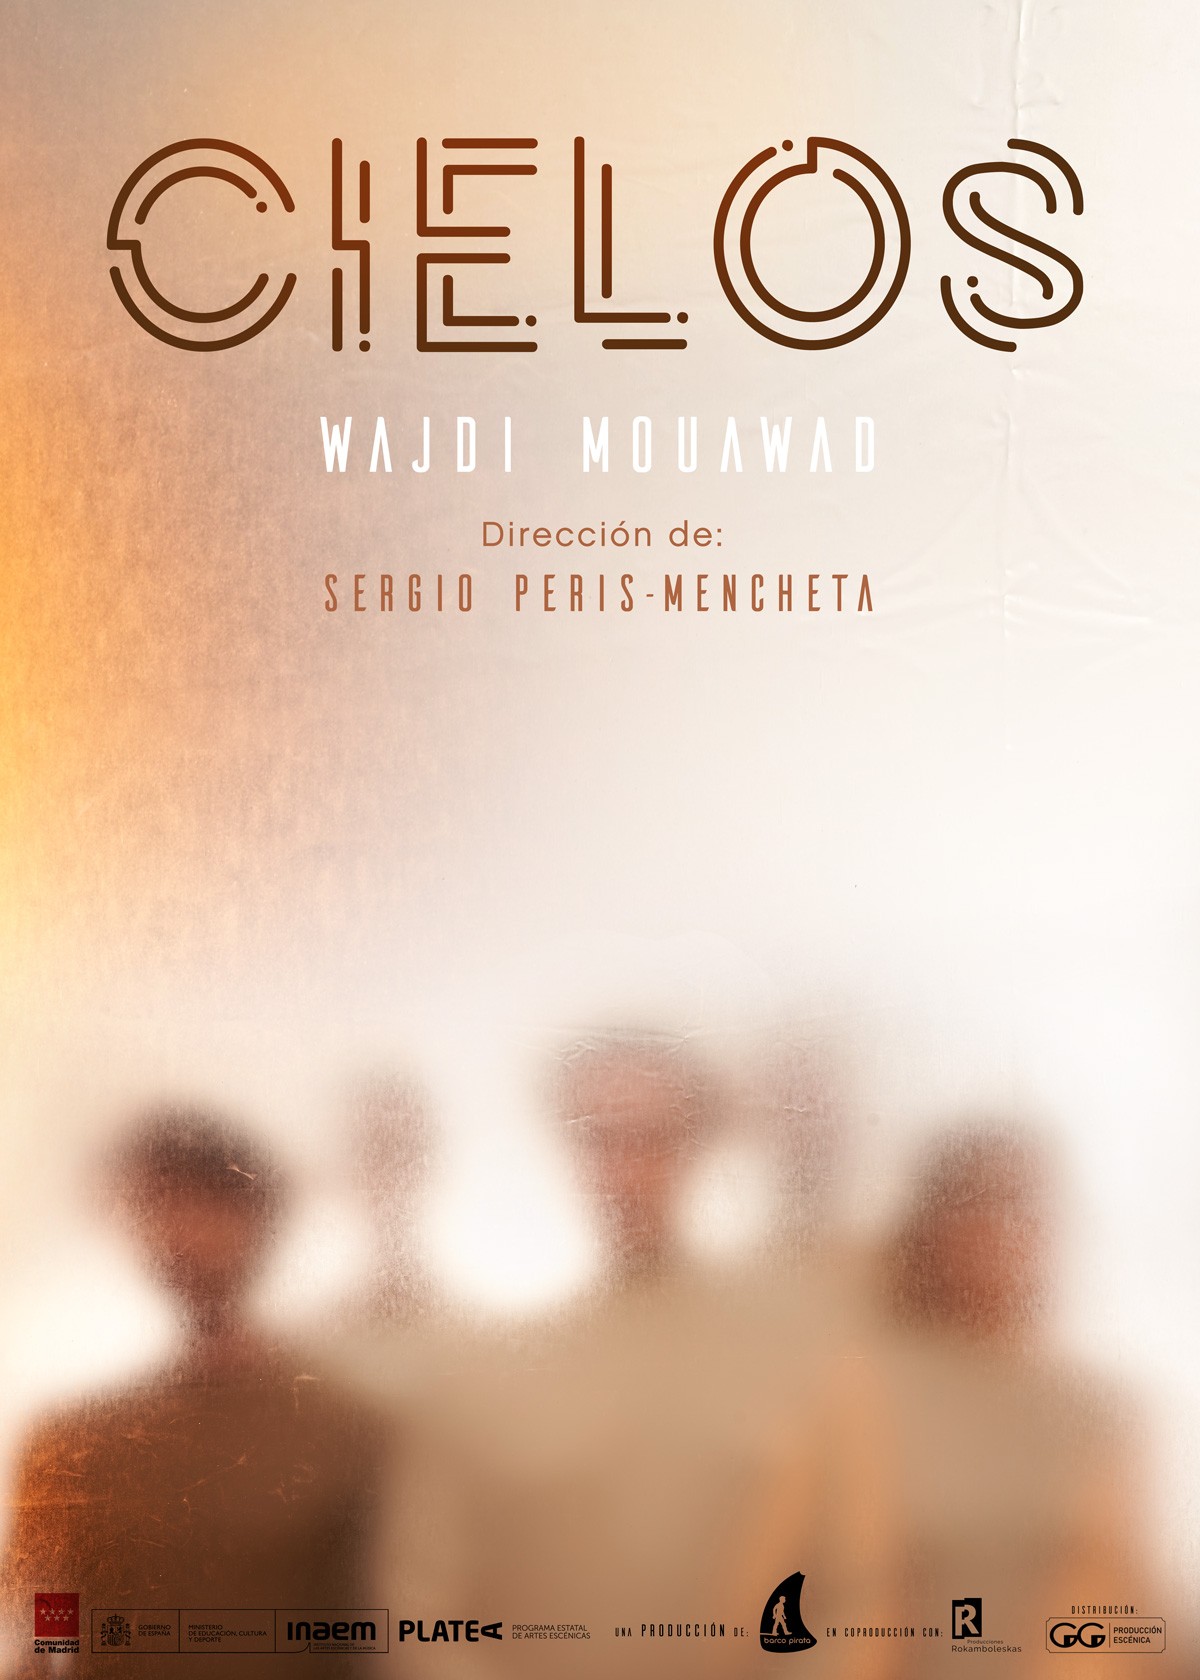 “Cielos” de Wajdi Mouawad, dirigida por Sergio Peris-Mencheta en el Teatro Chapí de Villena